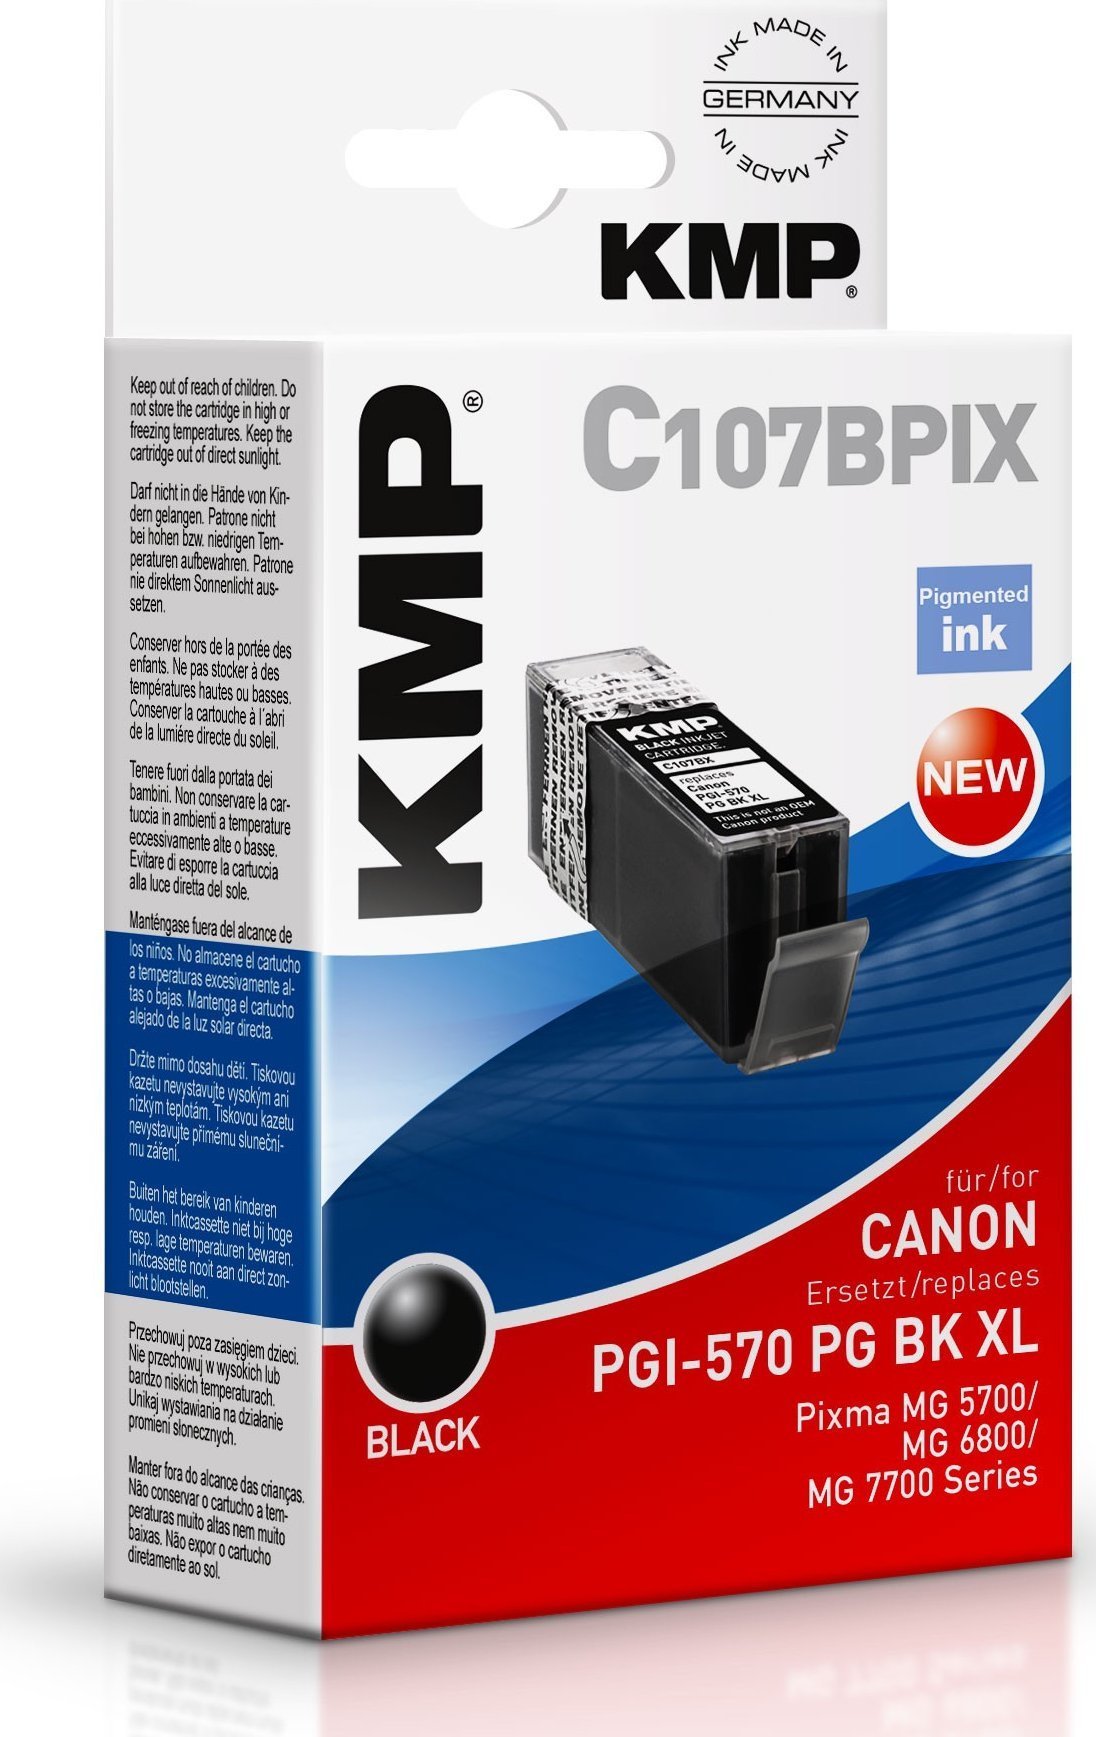 Cartuș de cerneală KMP Patrone Canon PGI-570 PG BK XL comp. porc negru. C107BPIX - 1567,0001